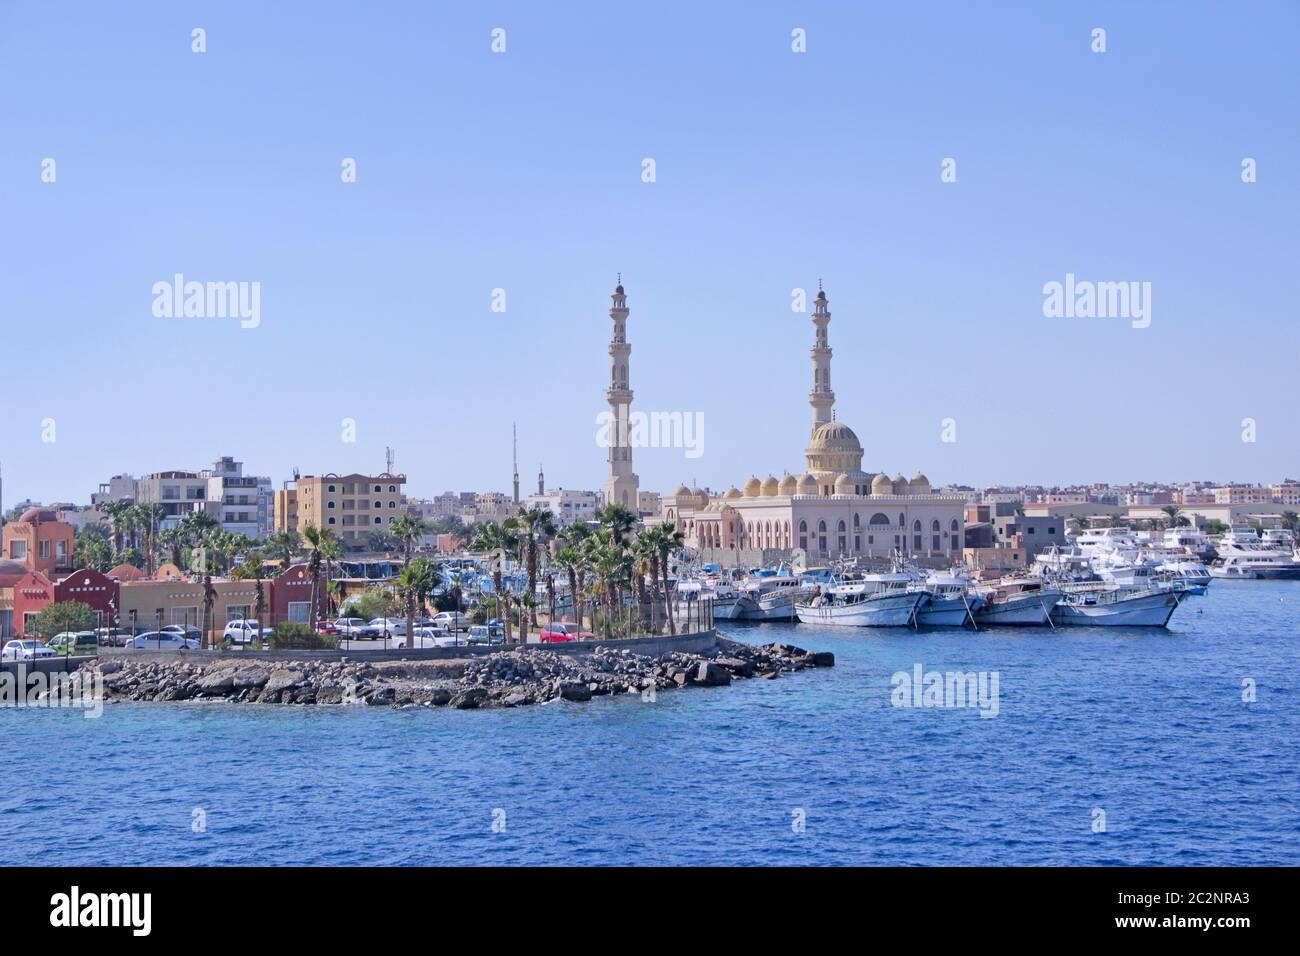 Vista de terraplén de Hurghada con yates amarrados, barcos y hermosa mezquita. Moderna ciudad egipcia Foto de stock